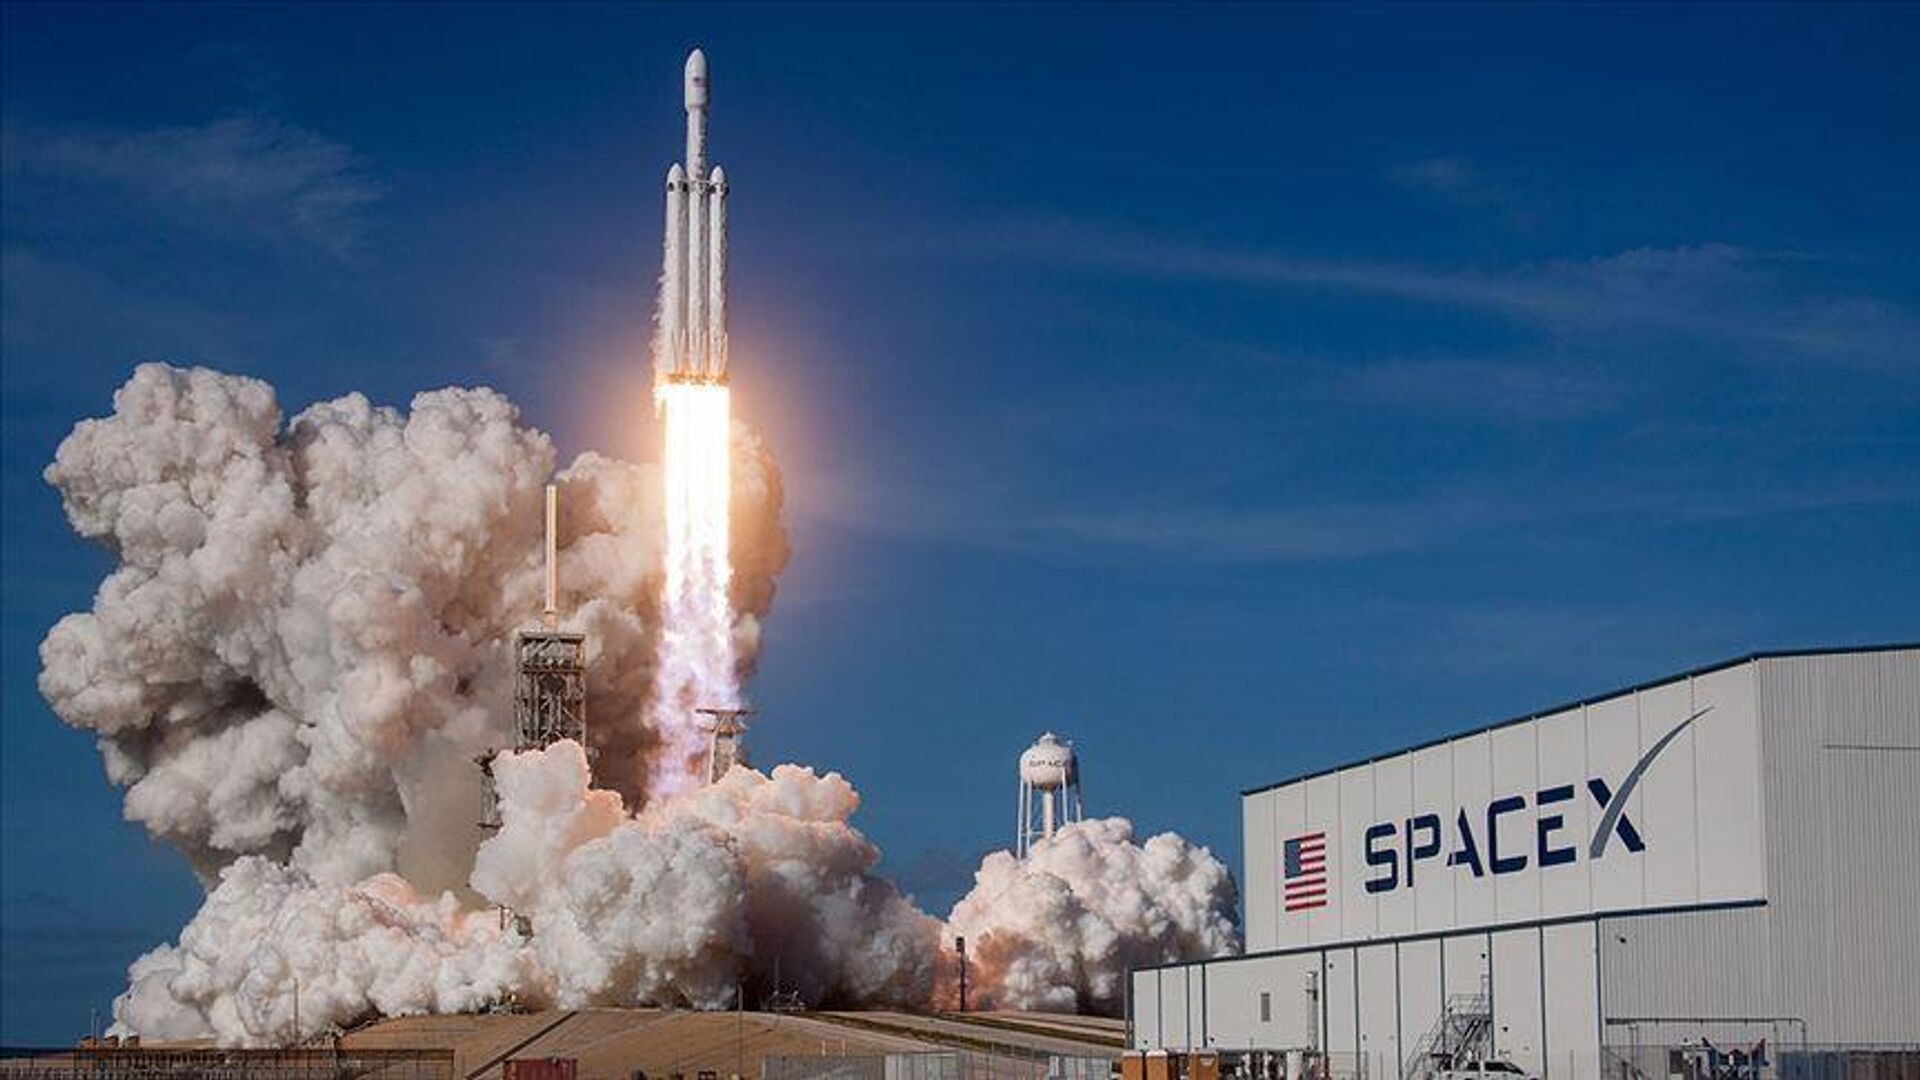 2 internet uydusu Falcon-9 roketi ile yörüngeye fırlatıldı